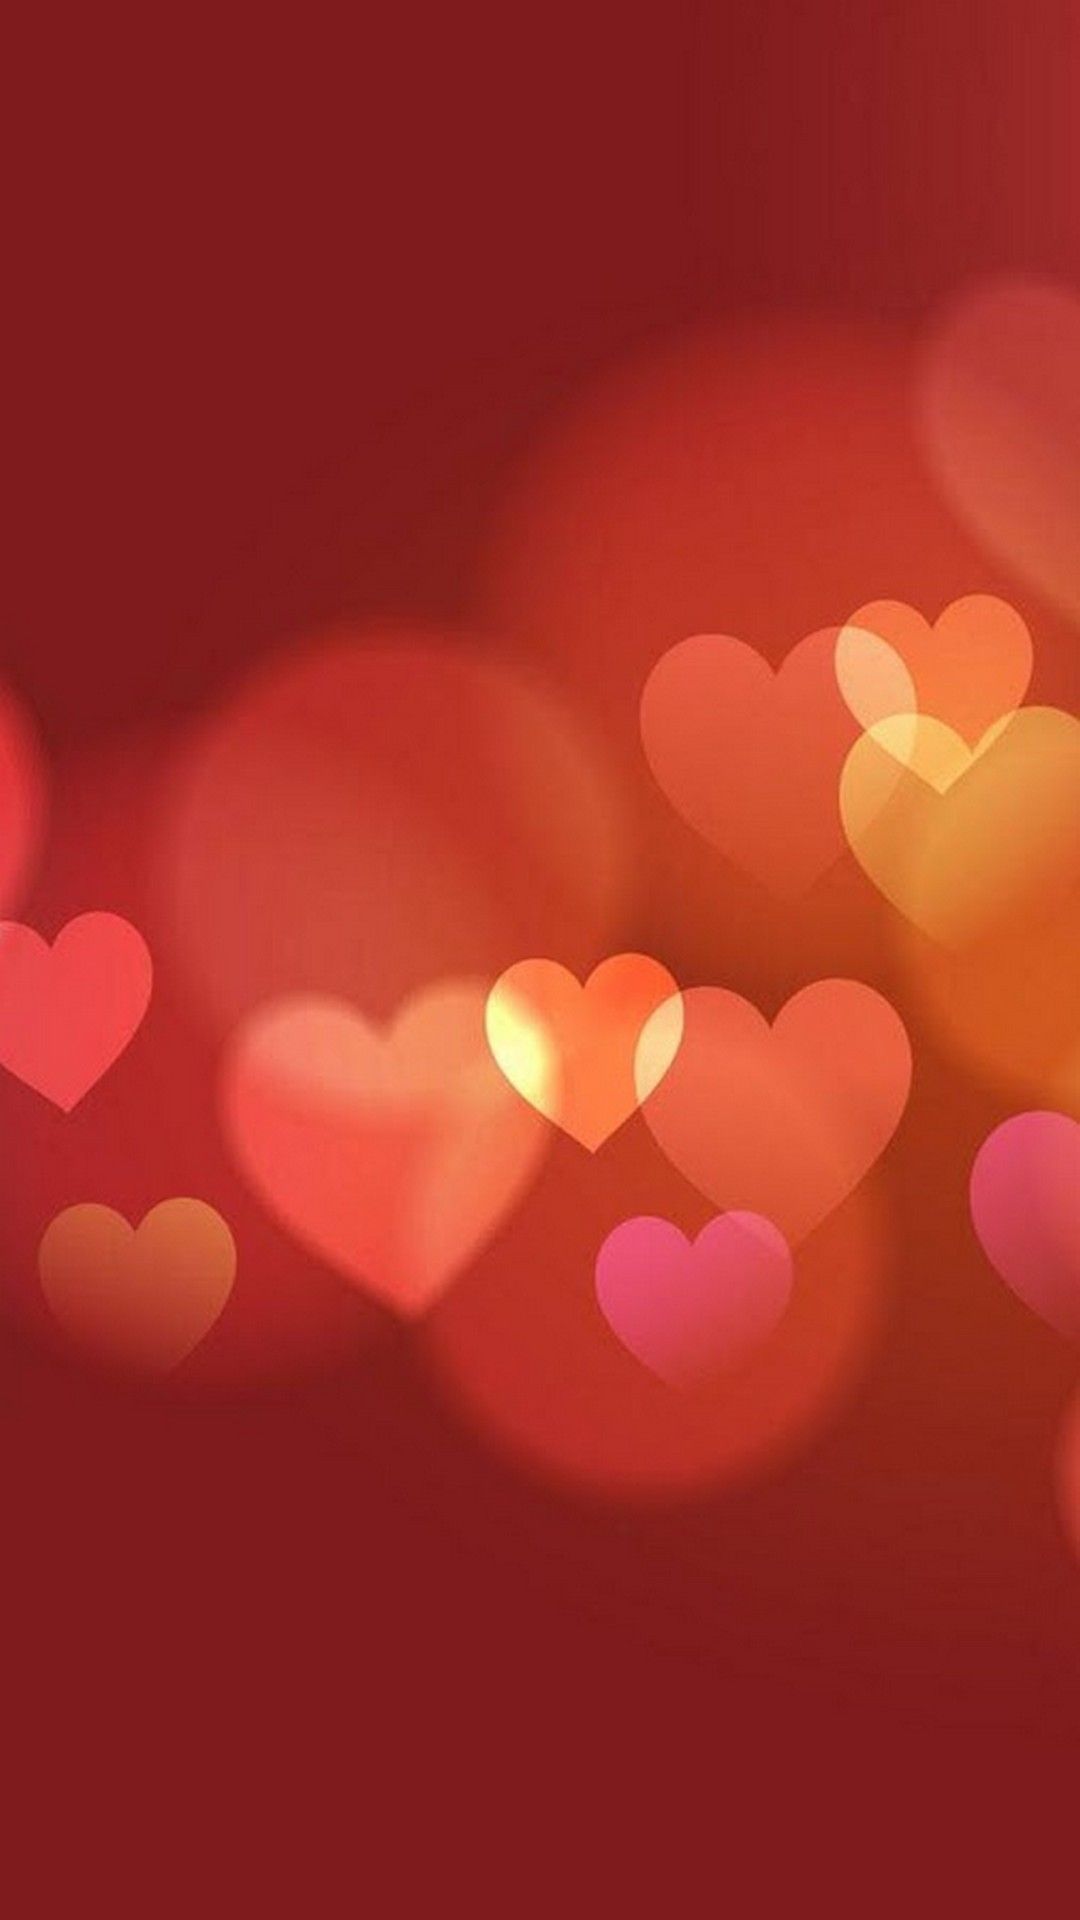 Những hình nền đáng yêu với chủ đề Valentine sẽ làm cho màn hình điện thoại hay máy tính của bạn trở nên đáng yêu hơn. Với sự kết hợp tinh tế giữa hình ảnh đáng yêu và gam màu hồng tạo nên sự dễ thương và tình cảm. Hãy tải ngay những hình nền này để trang trí cho màn hình của bạn trở nên sinh động và vui tươi hơn.